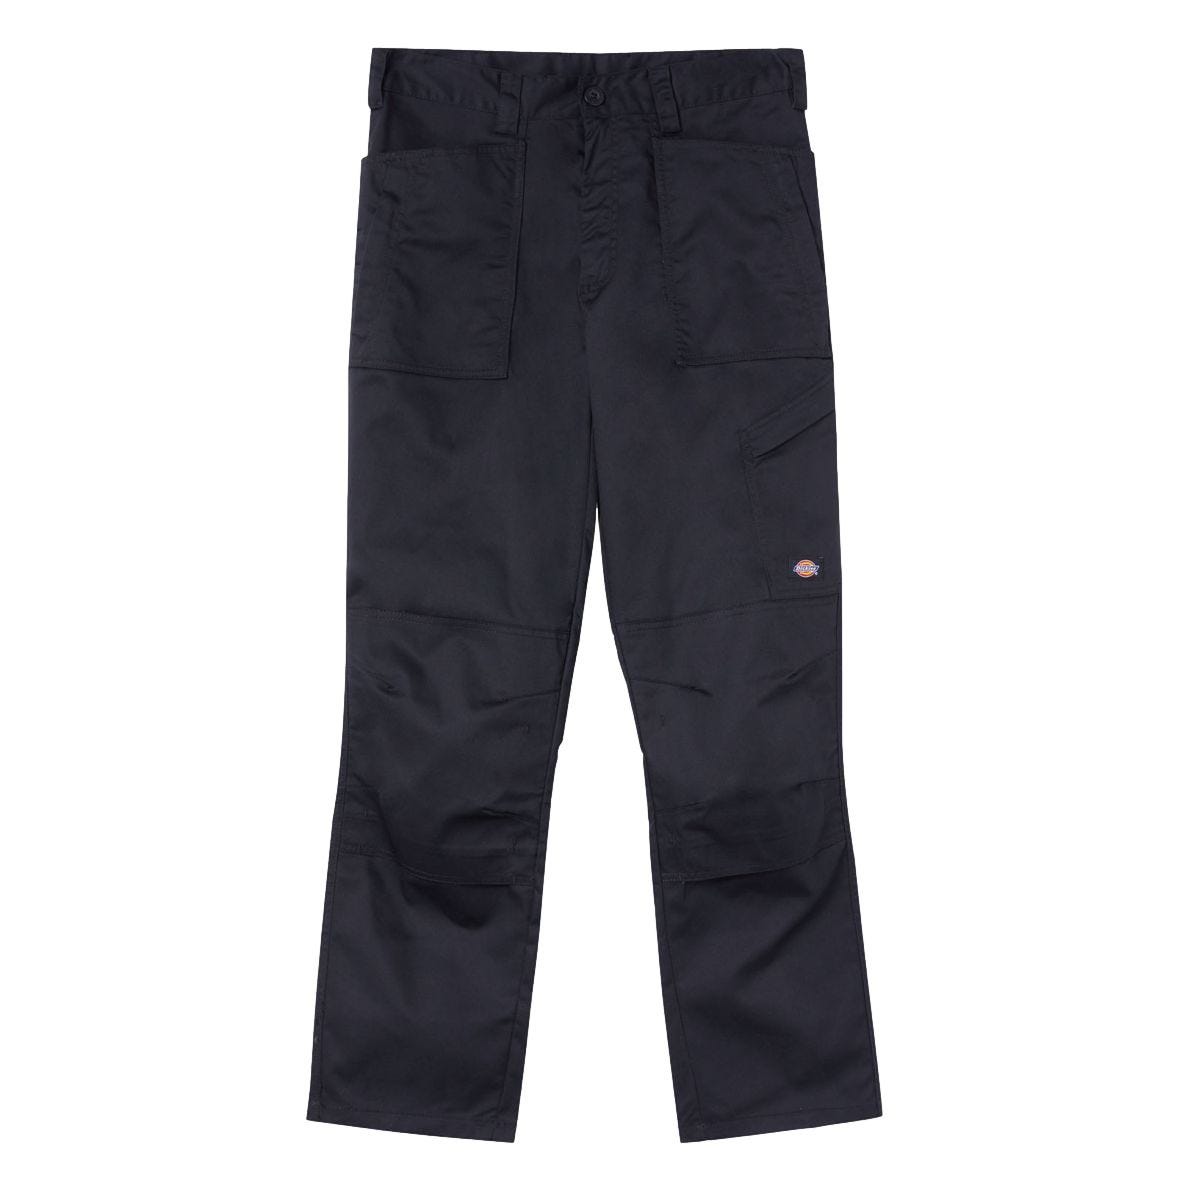 Pantalon de travail Action Flex noir - Dickies - Taille 46 1